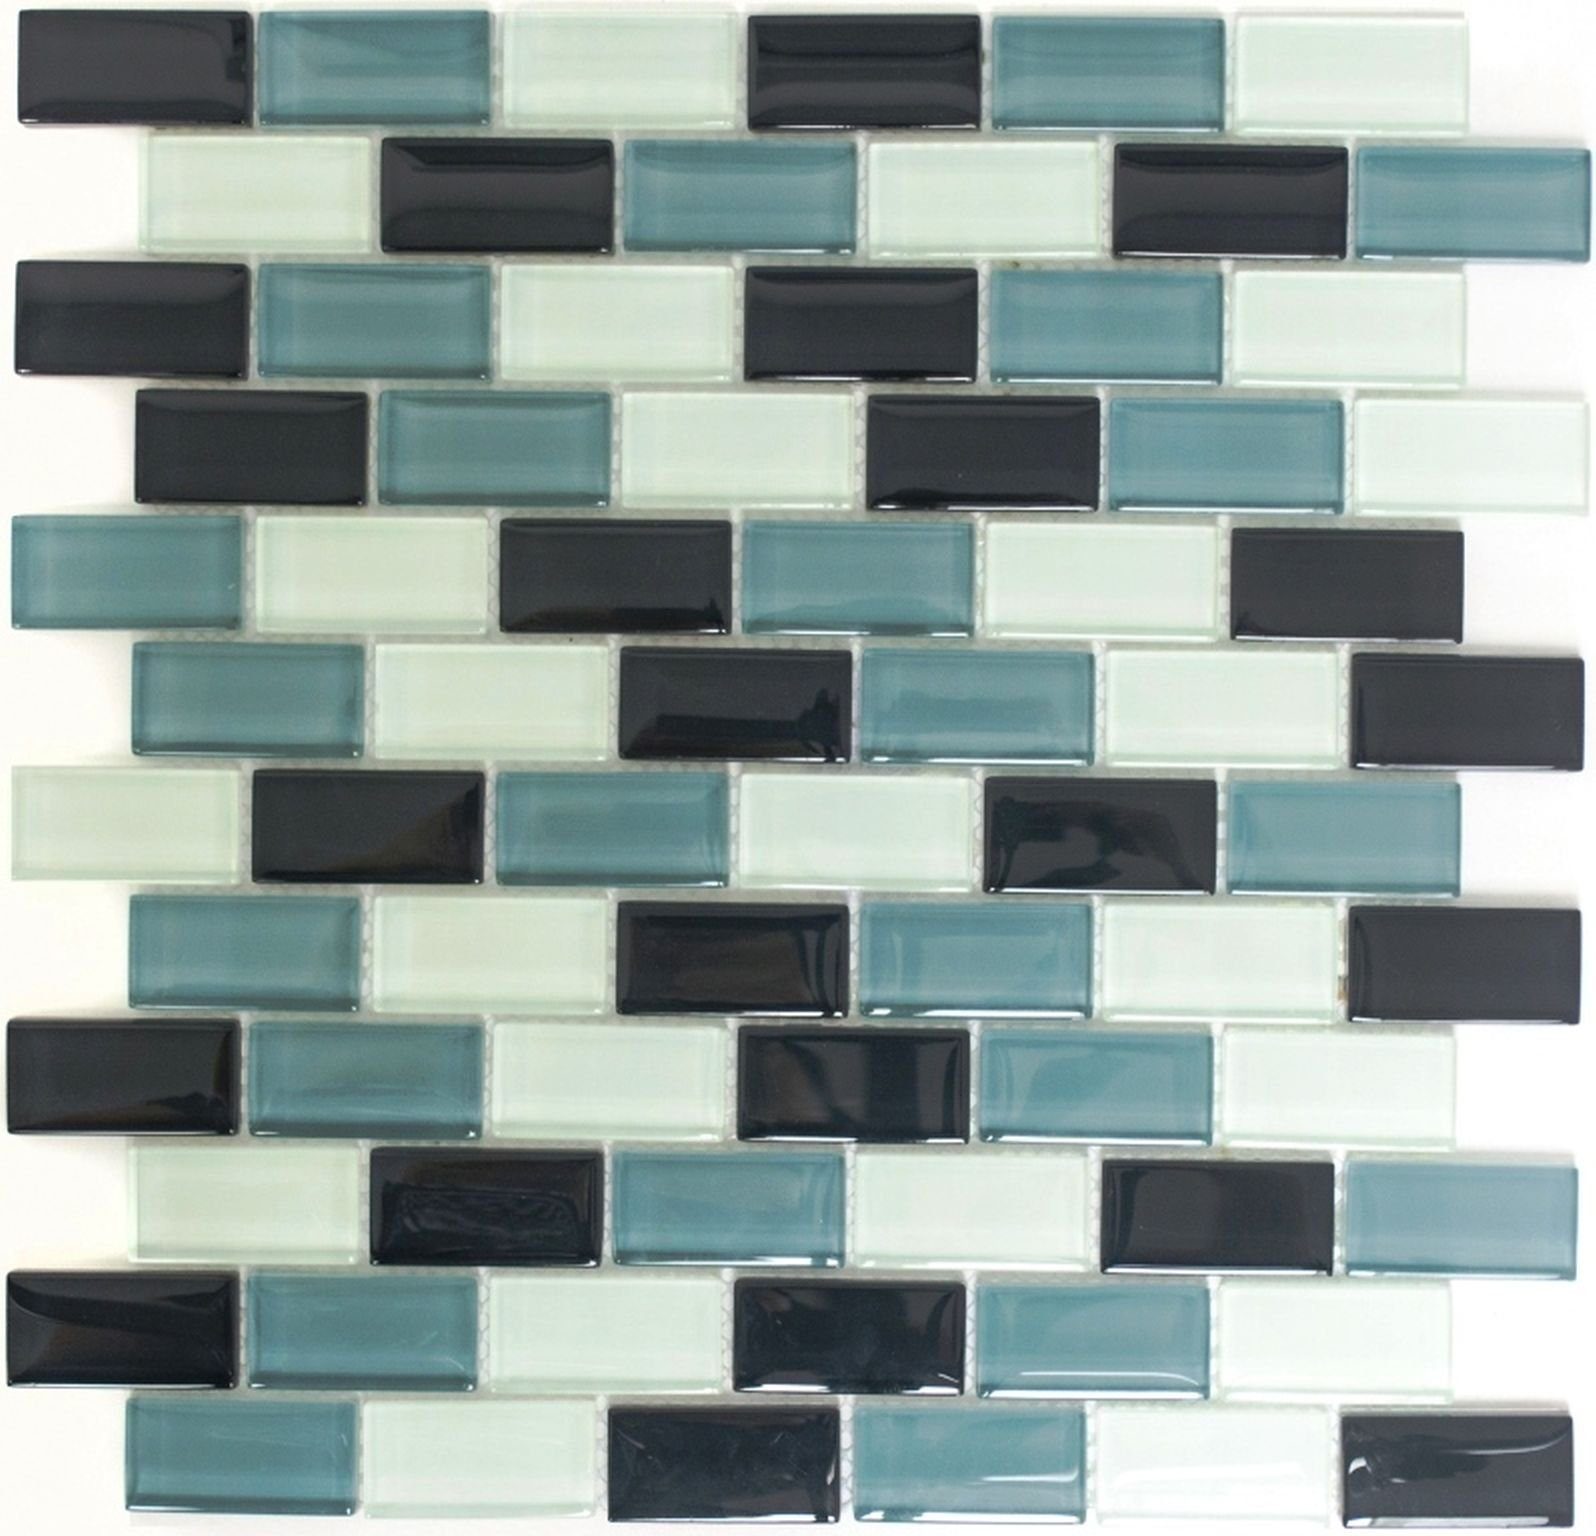 Mosani Mosaikfliesen Glasmosaik Mosaikmatte Mosaikbordüre weiss grau schwarz